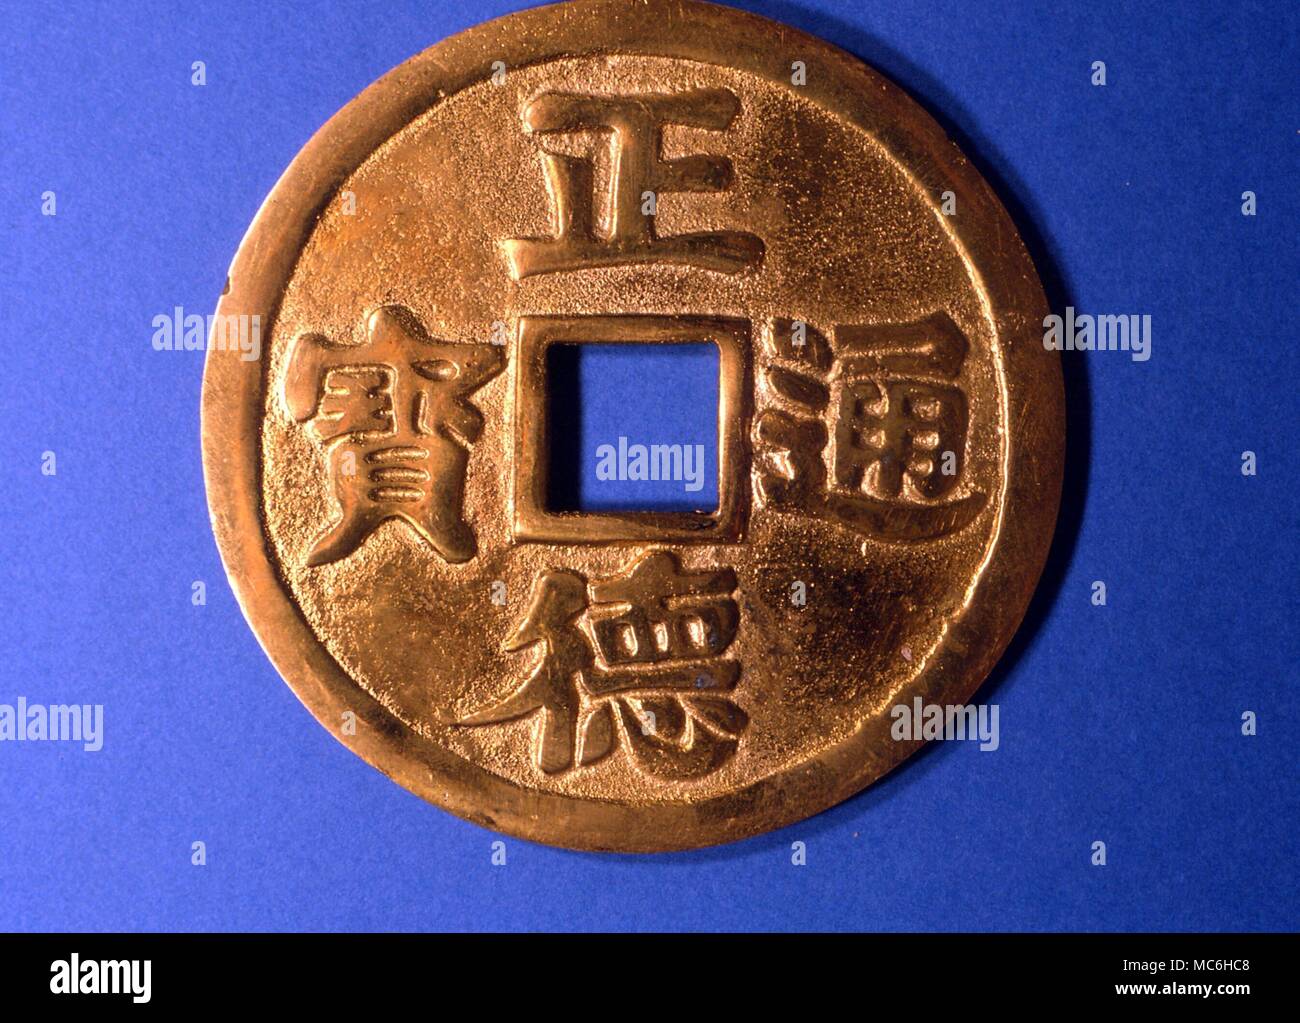 La mitología china - amuleto de bronce se utiliza para invocar la buena suerte. Esos amuletos se cuelgan upin habitaciones, a menudo en, o cerca de, las puertas Foto de stock